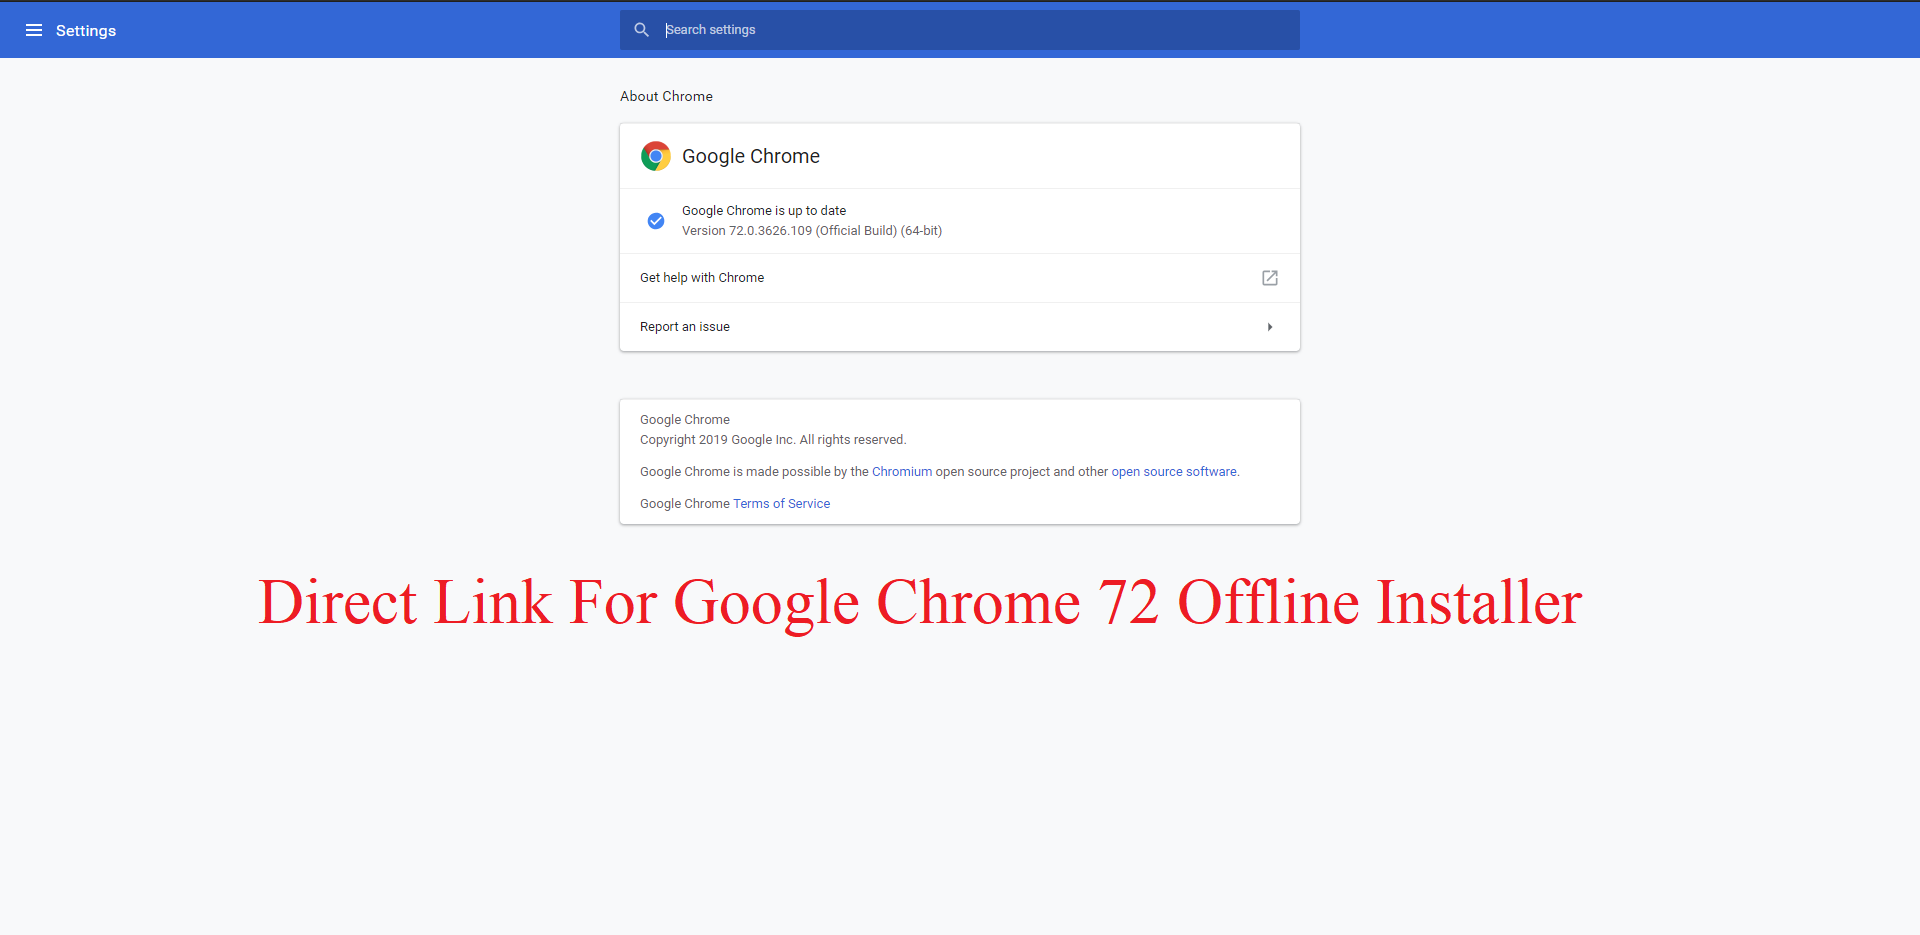 google chrome offline installer 2019